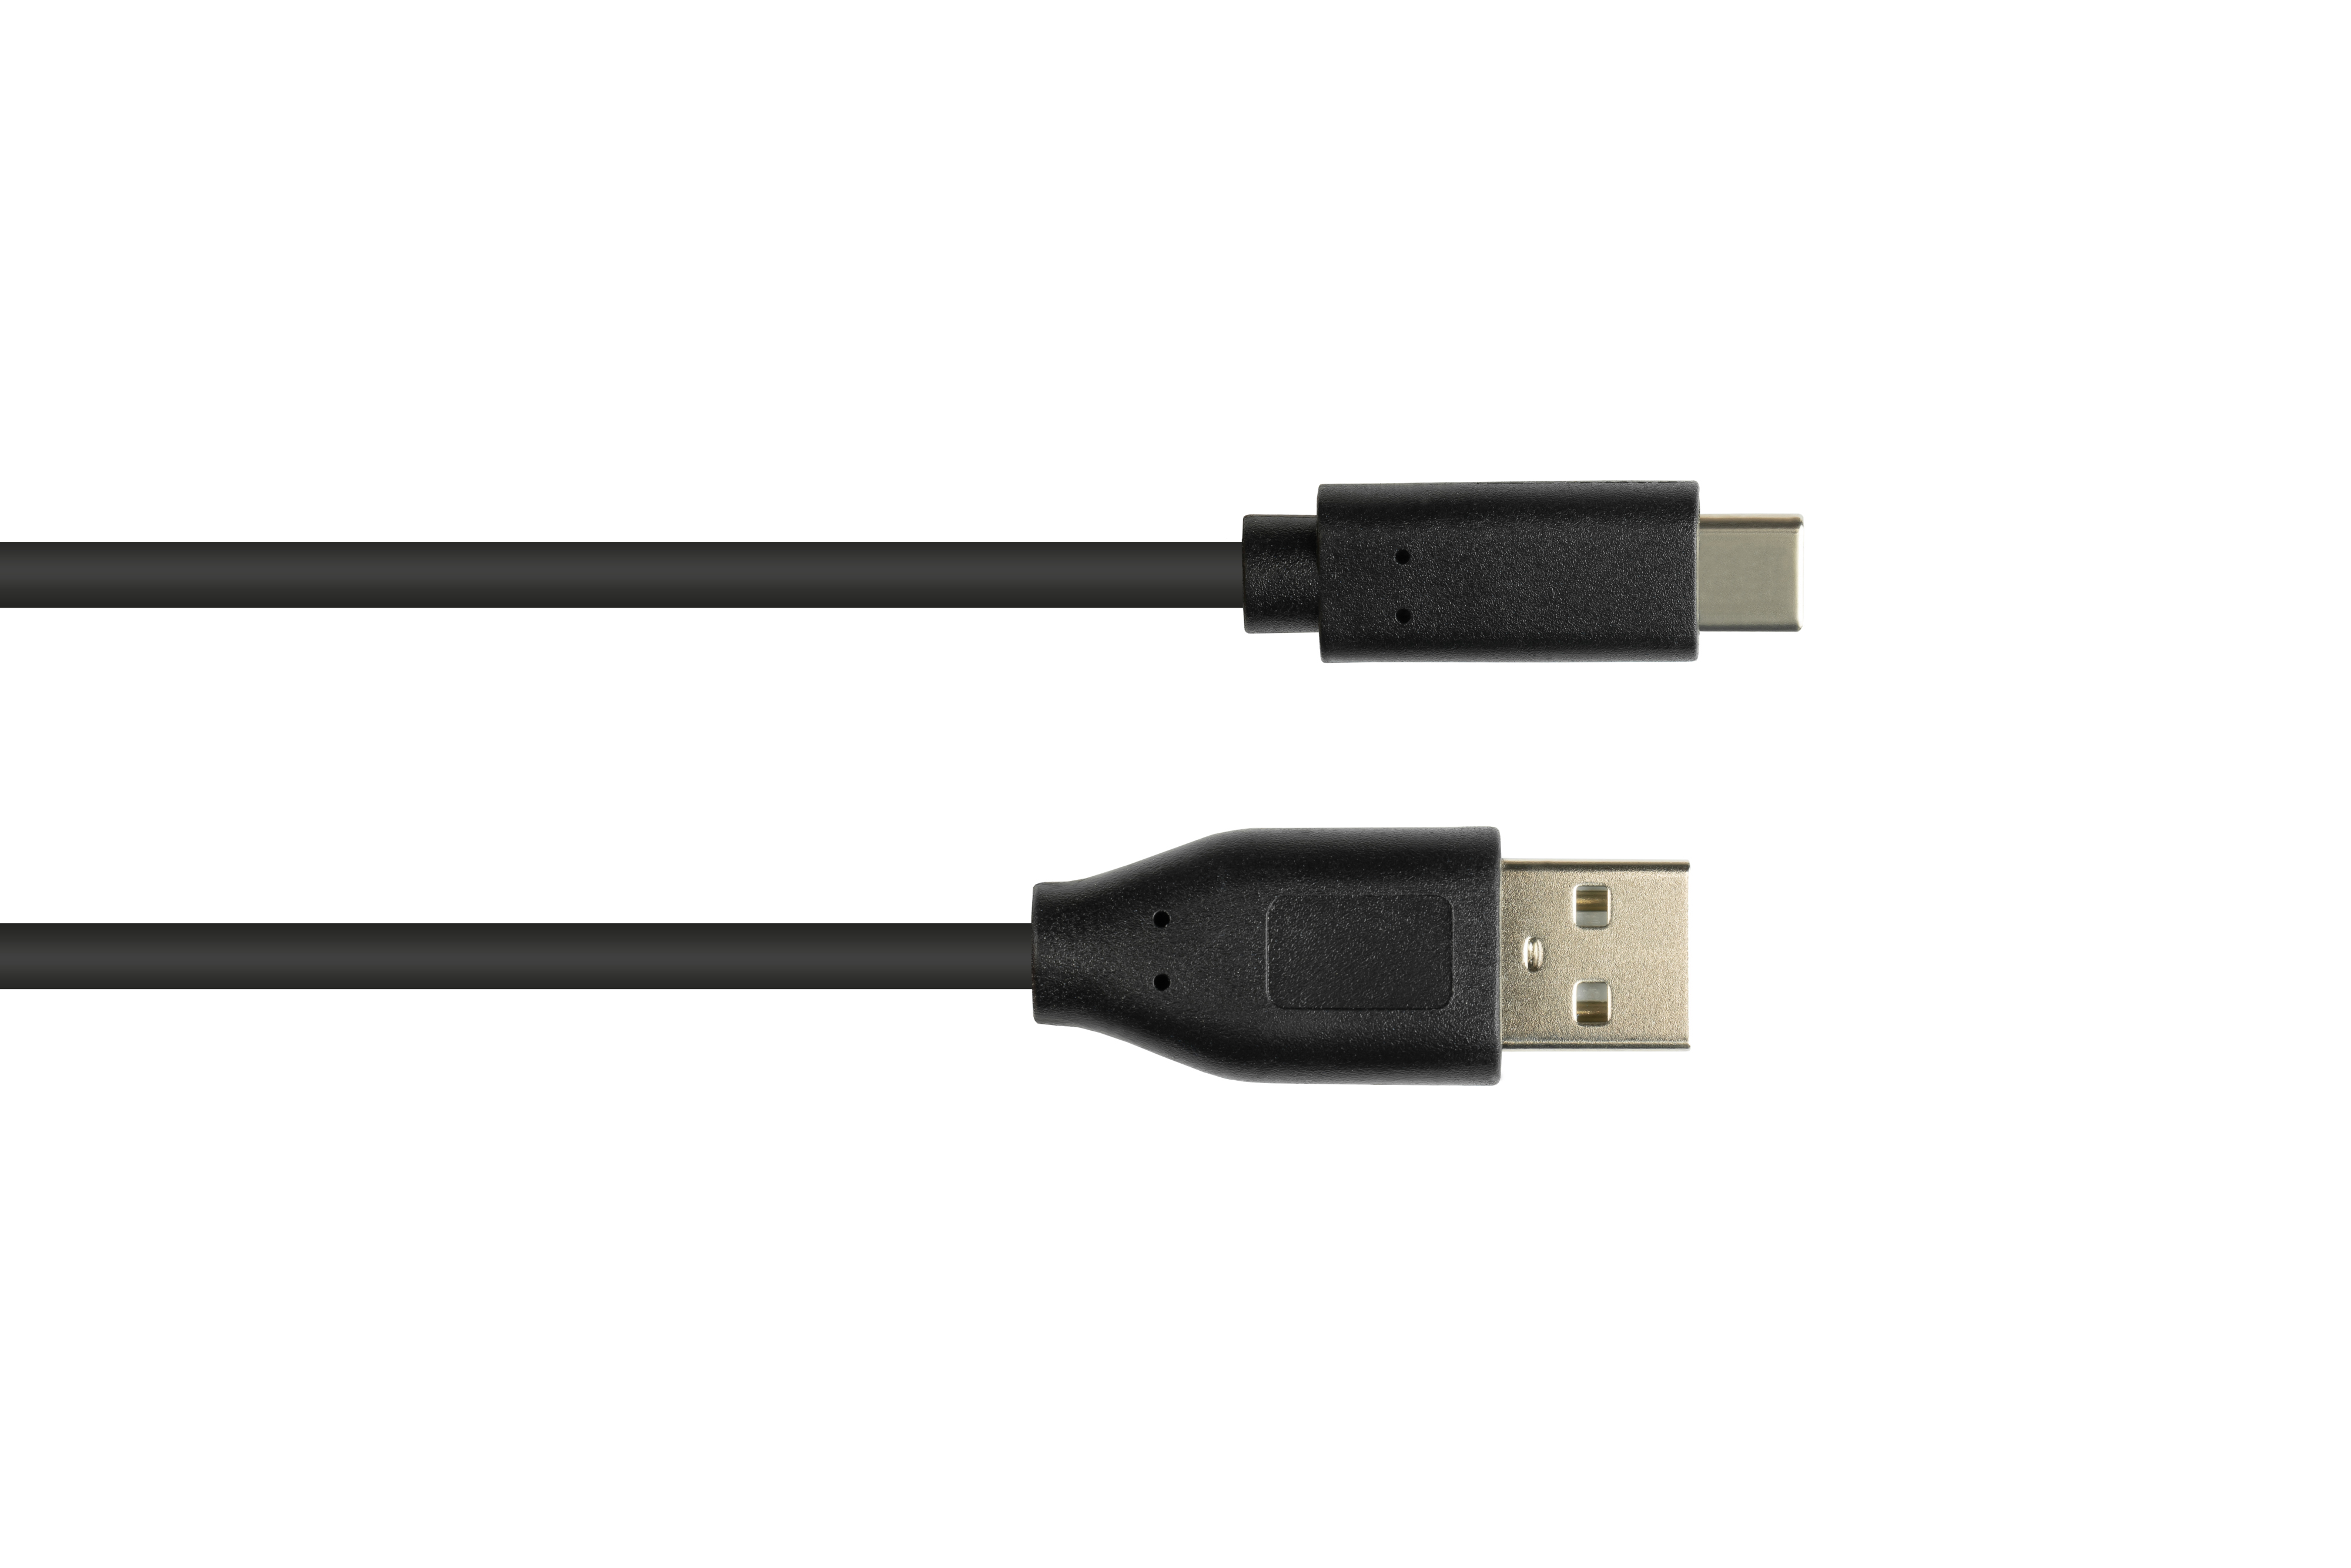 GOOD CONNECTIONS USB an 2.0, Stecker, CU, USB-C™ Anschlusskabel A 2.0 USB Stecker schwarz